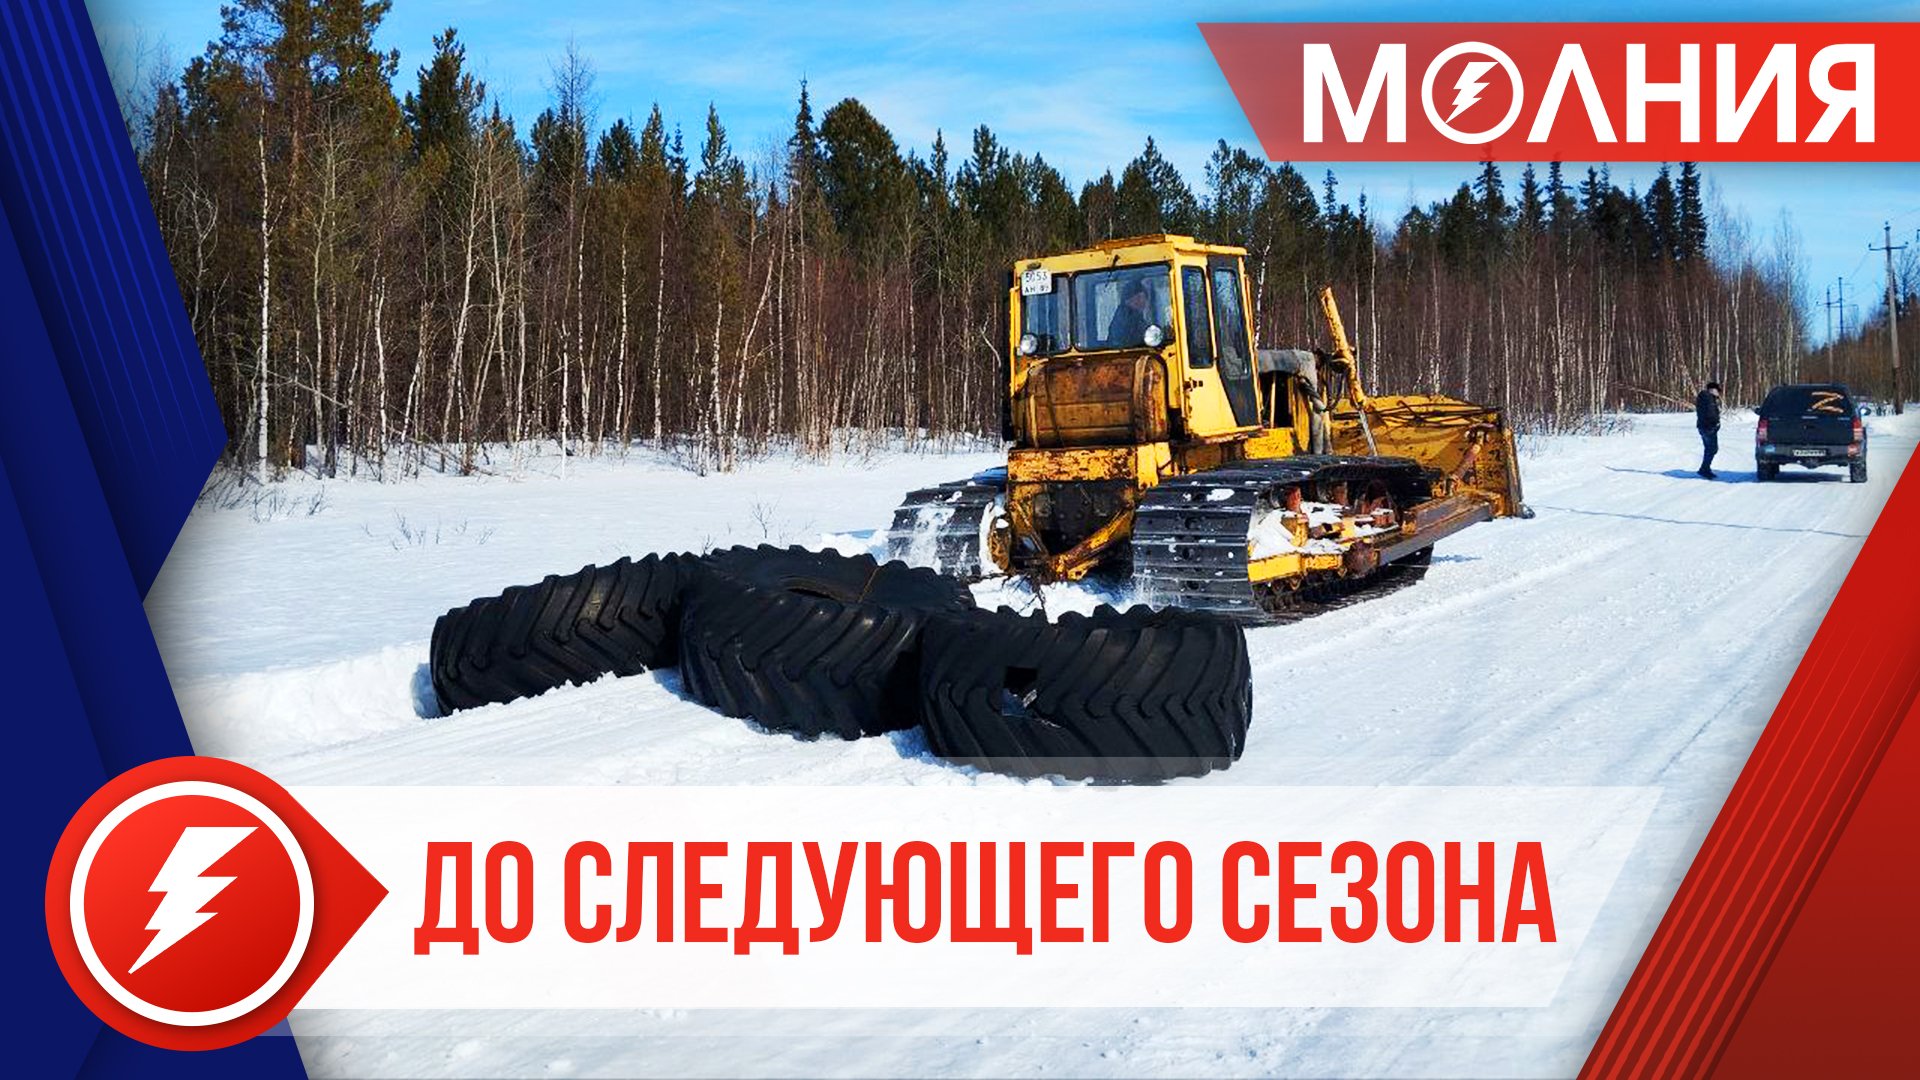 Зимник «Подъезд к селу Халясавэй» закрыт до следующего сезона